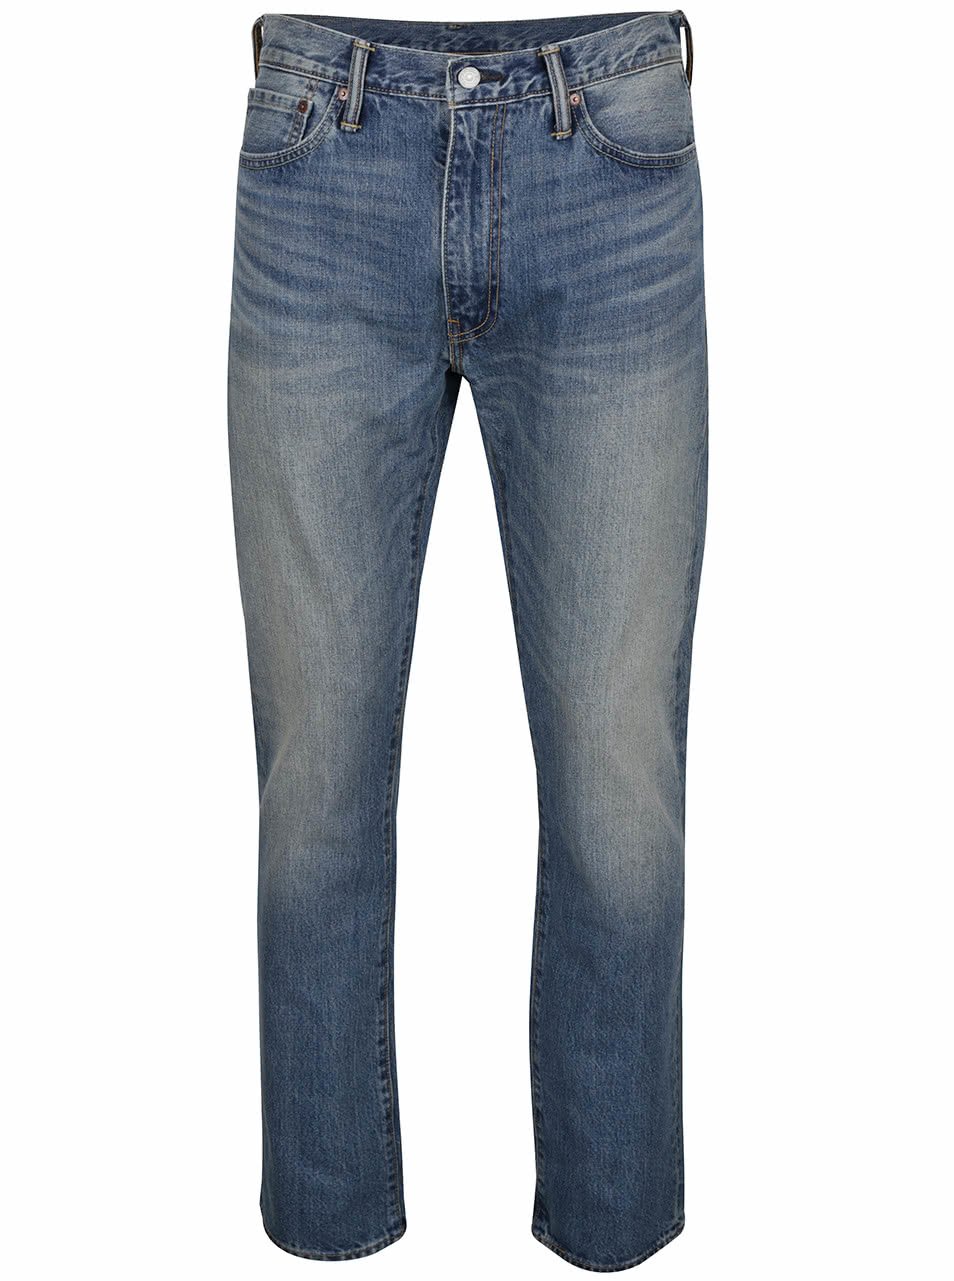 Modré pánské slim džíny s vyšisovaným efektem Levi's® 513™